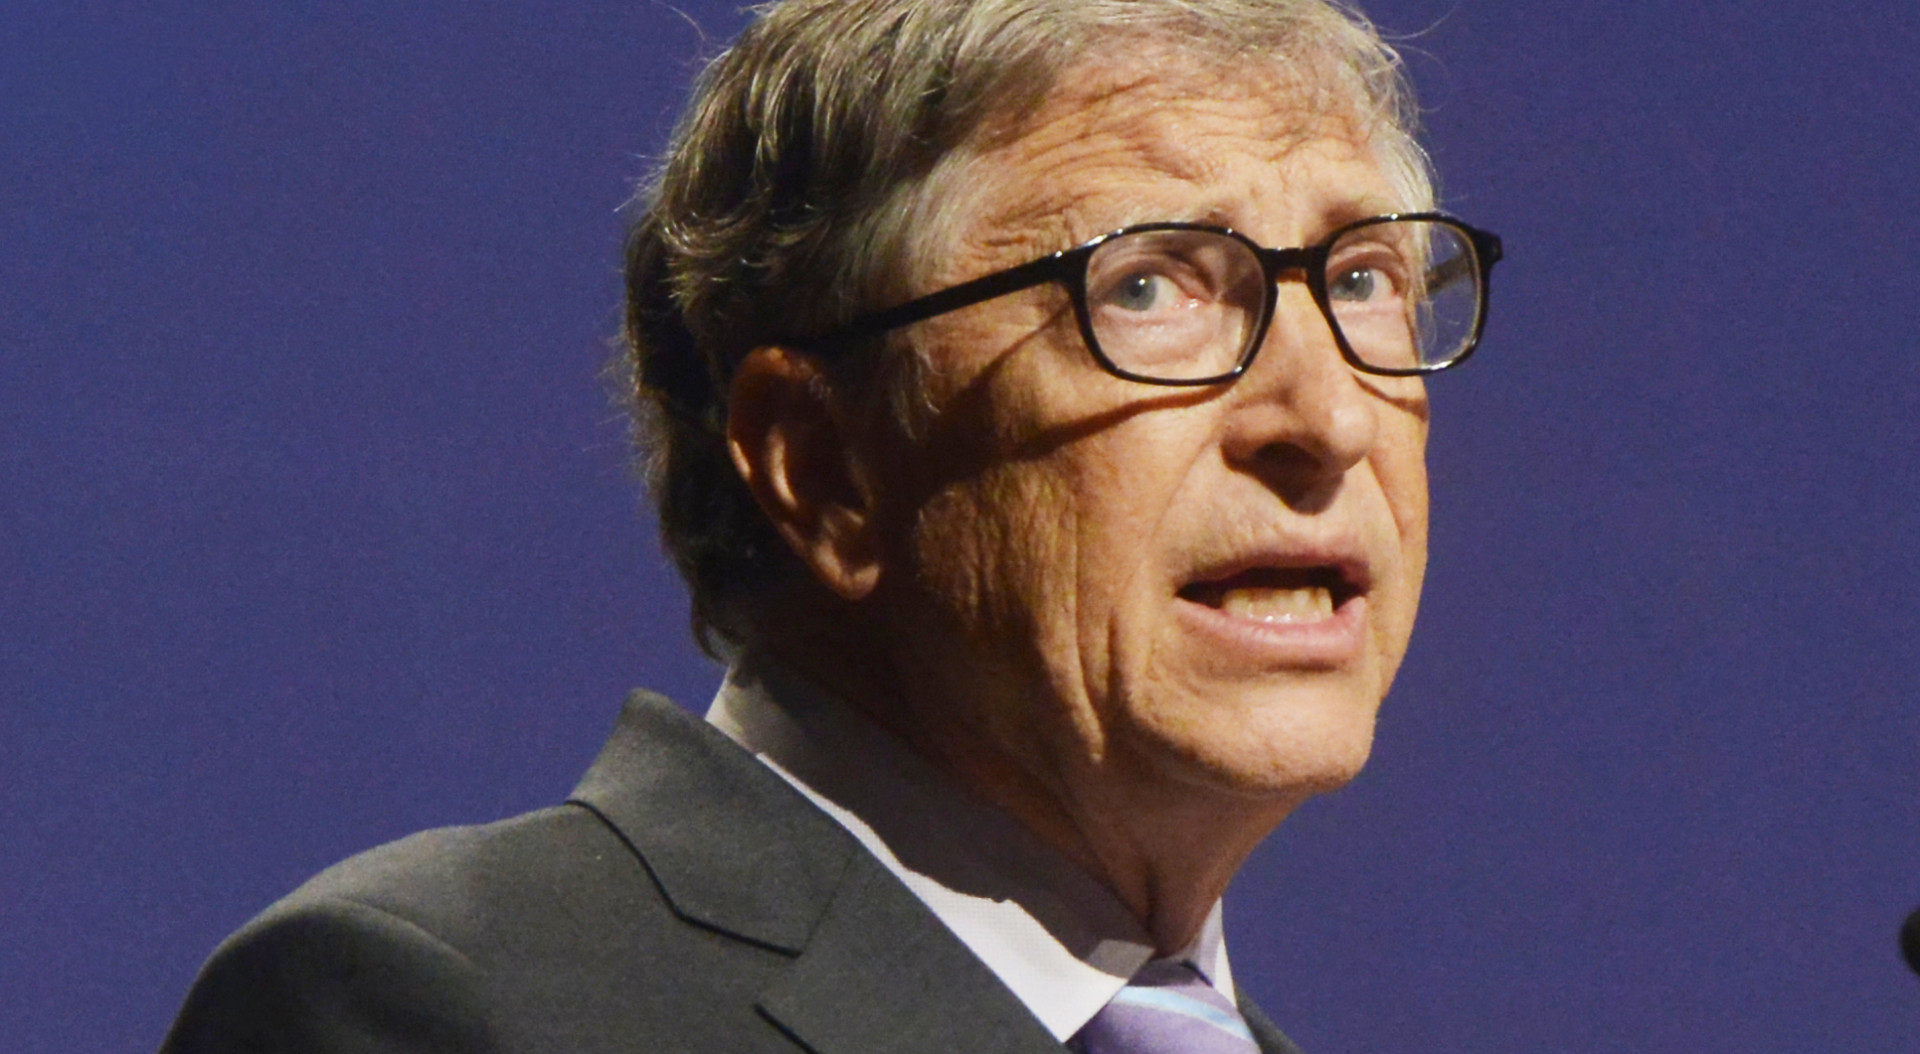 Bill Gates ostrzega przed jeszcze gorszą pandemią i wzywa rządy do współpracy